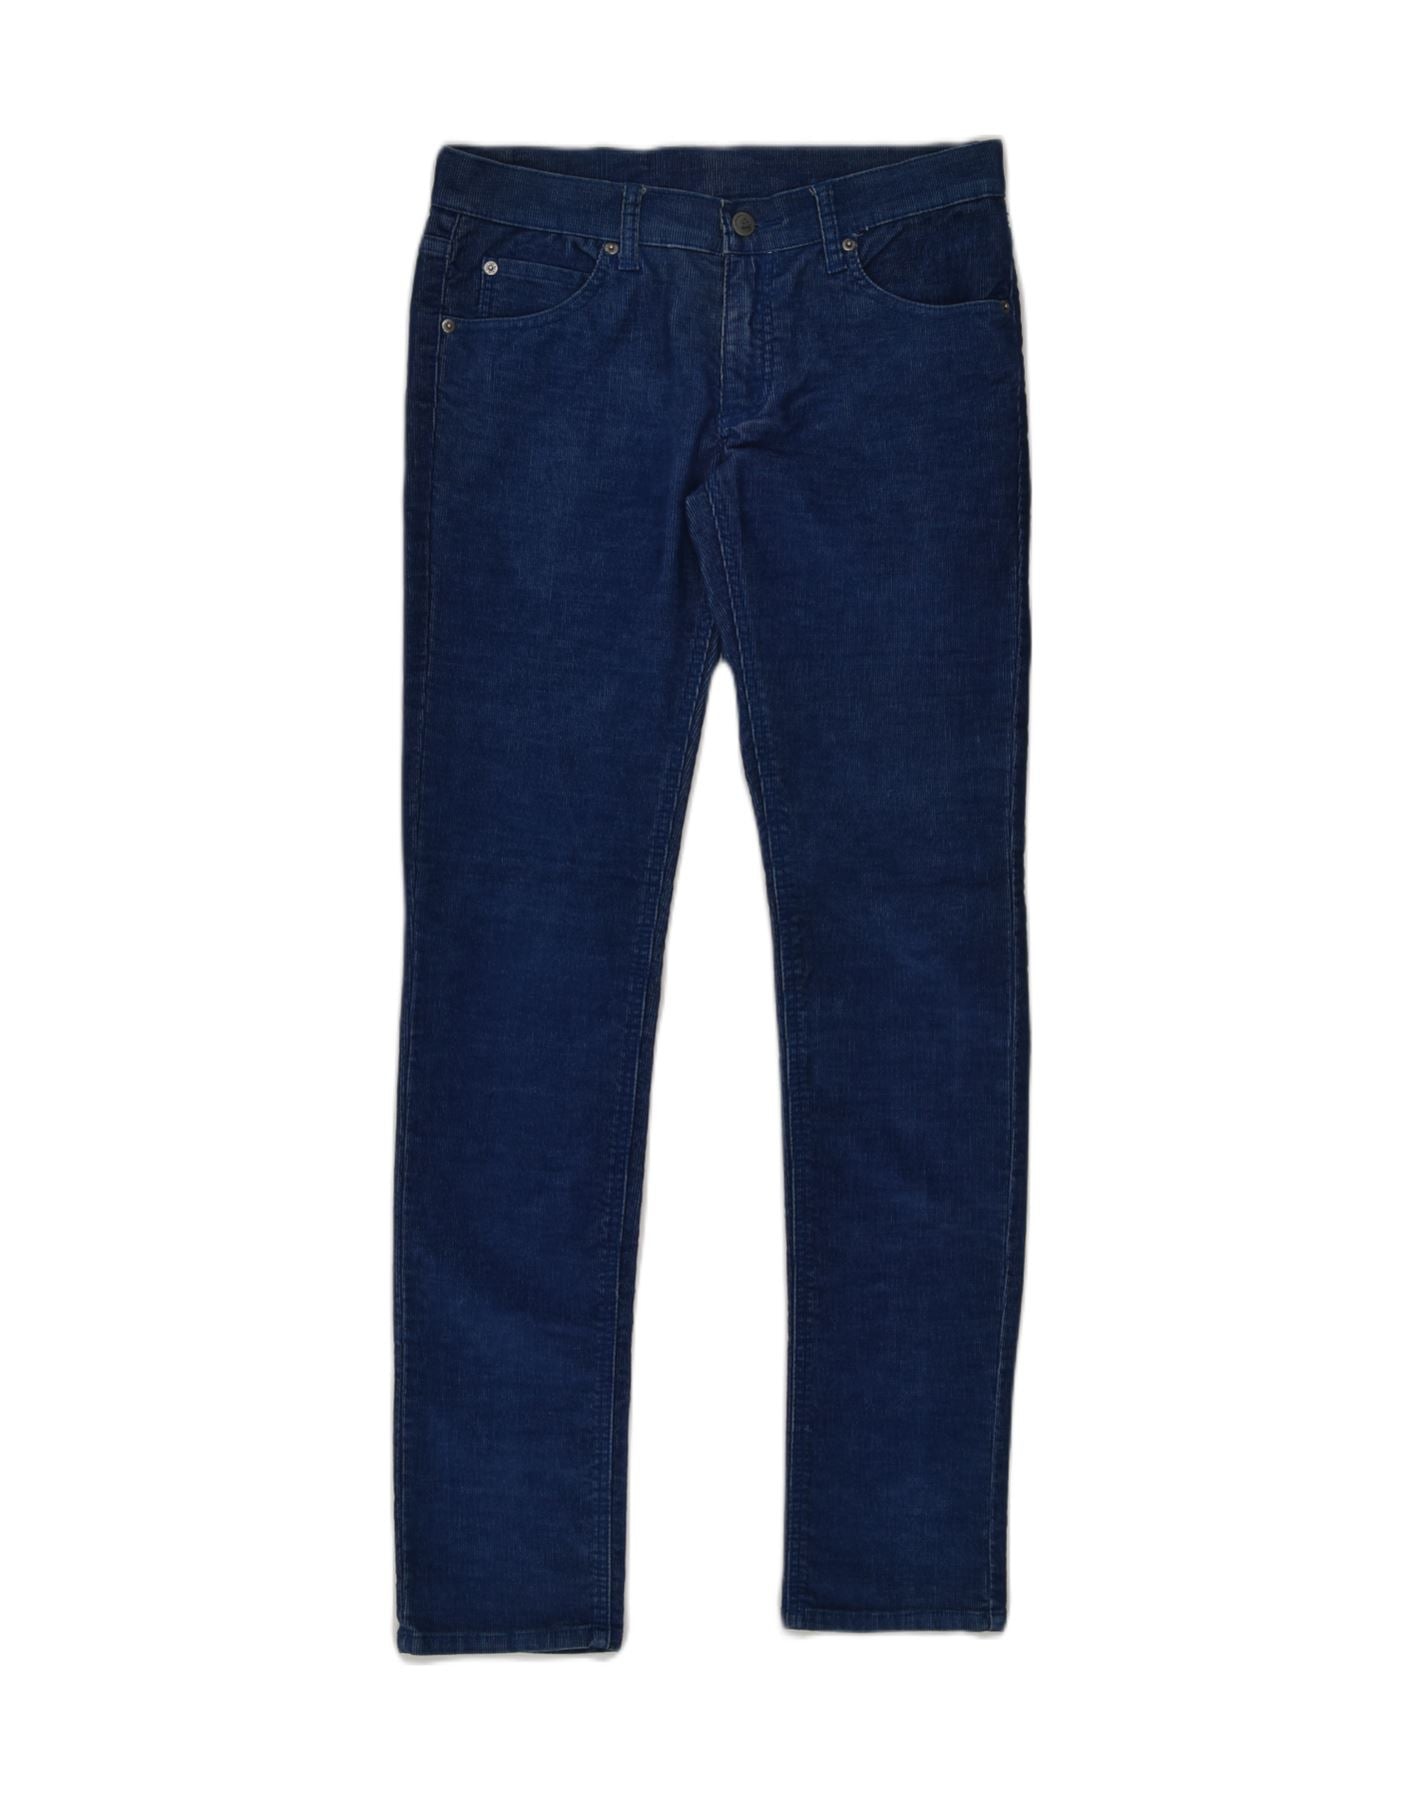 Men Baggy Jeans Wide Leg Denim Pants Vintage Hip Hop Style Loose Trousers  Blue Plus Size | Wish | Mens jeans, Baggy jeans, Denim pants